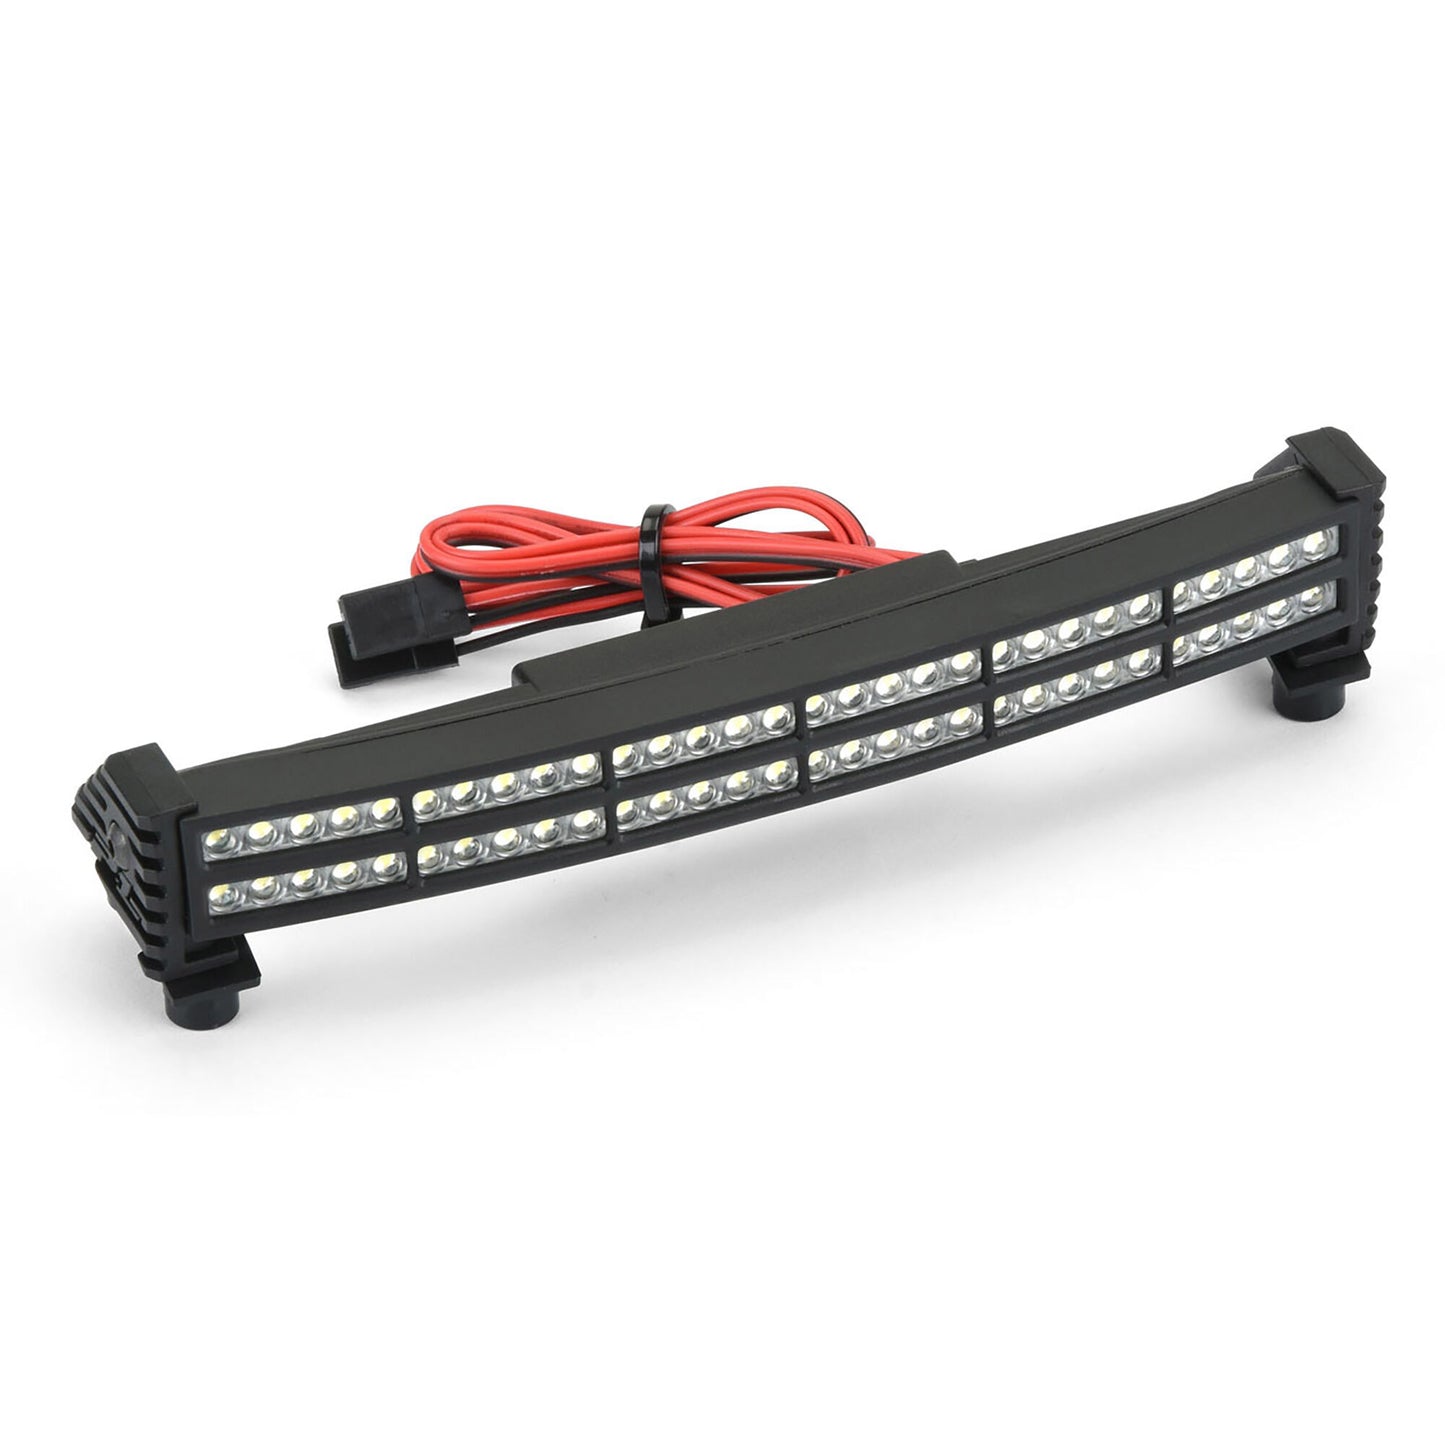 1/5 Pro-Line Double Row 6" Super-Bright LED Light Bar 6V-12V Curved: X-MAXX